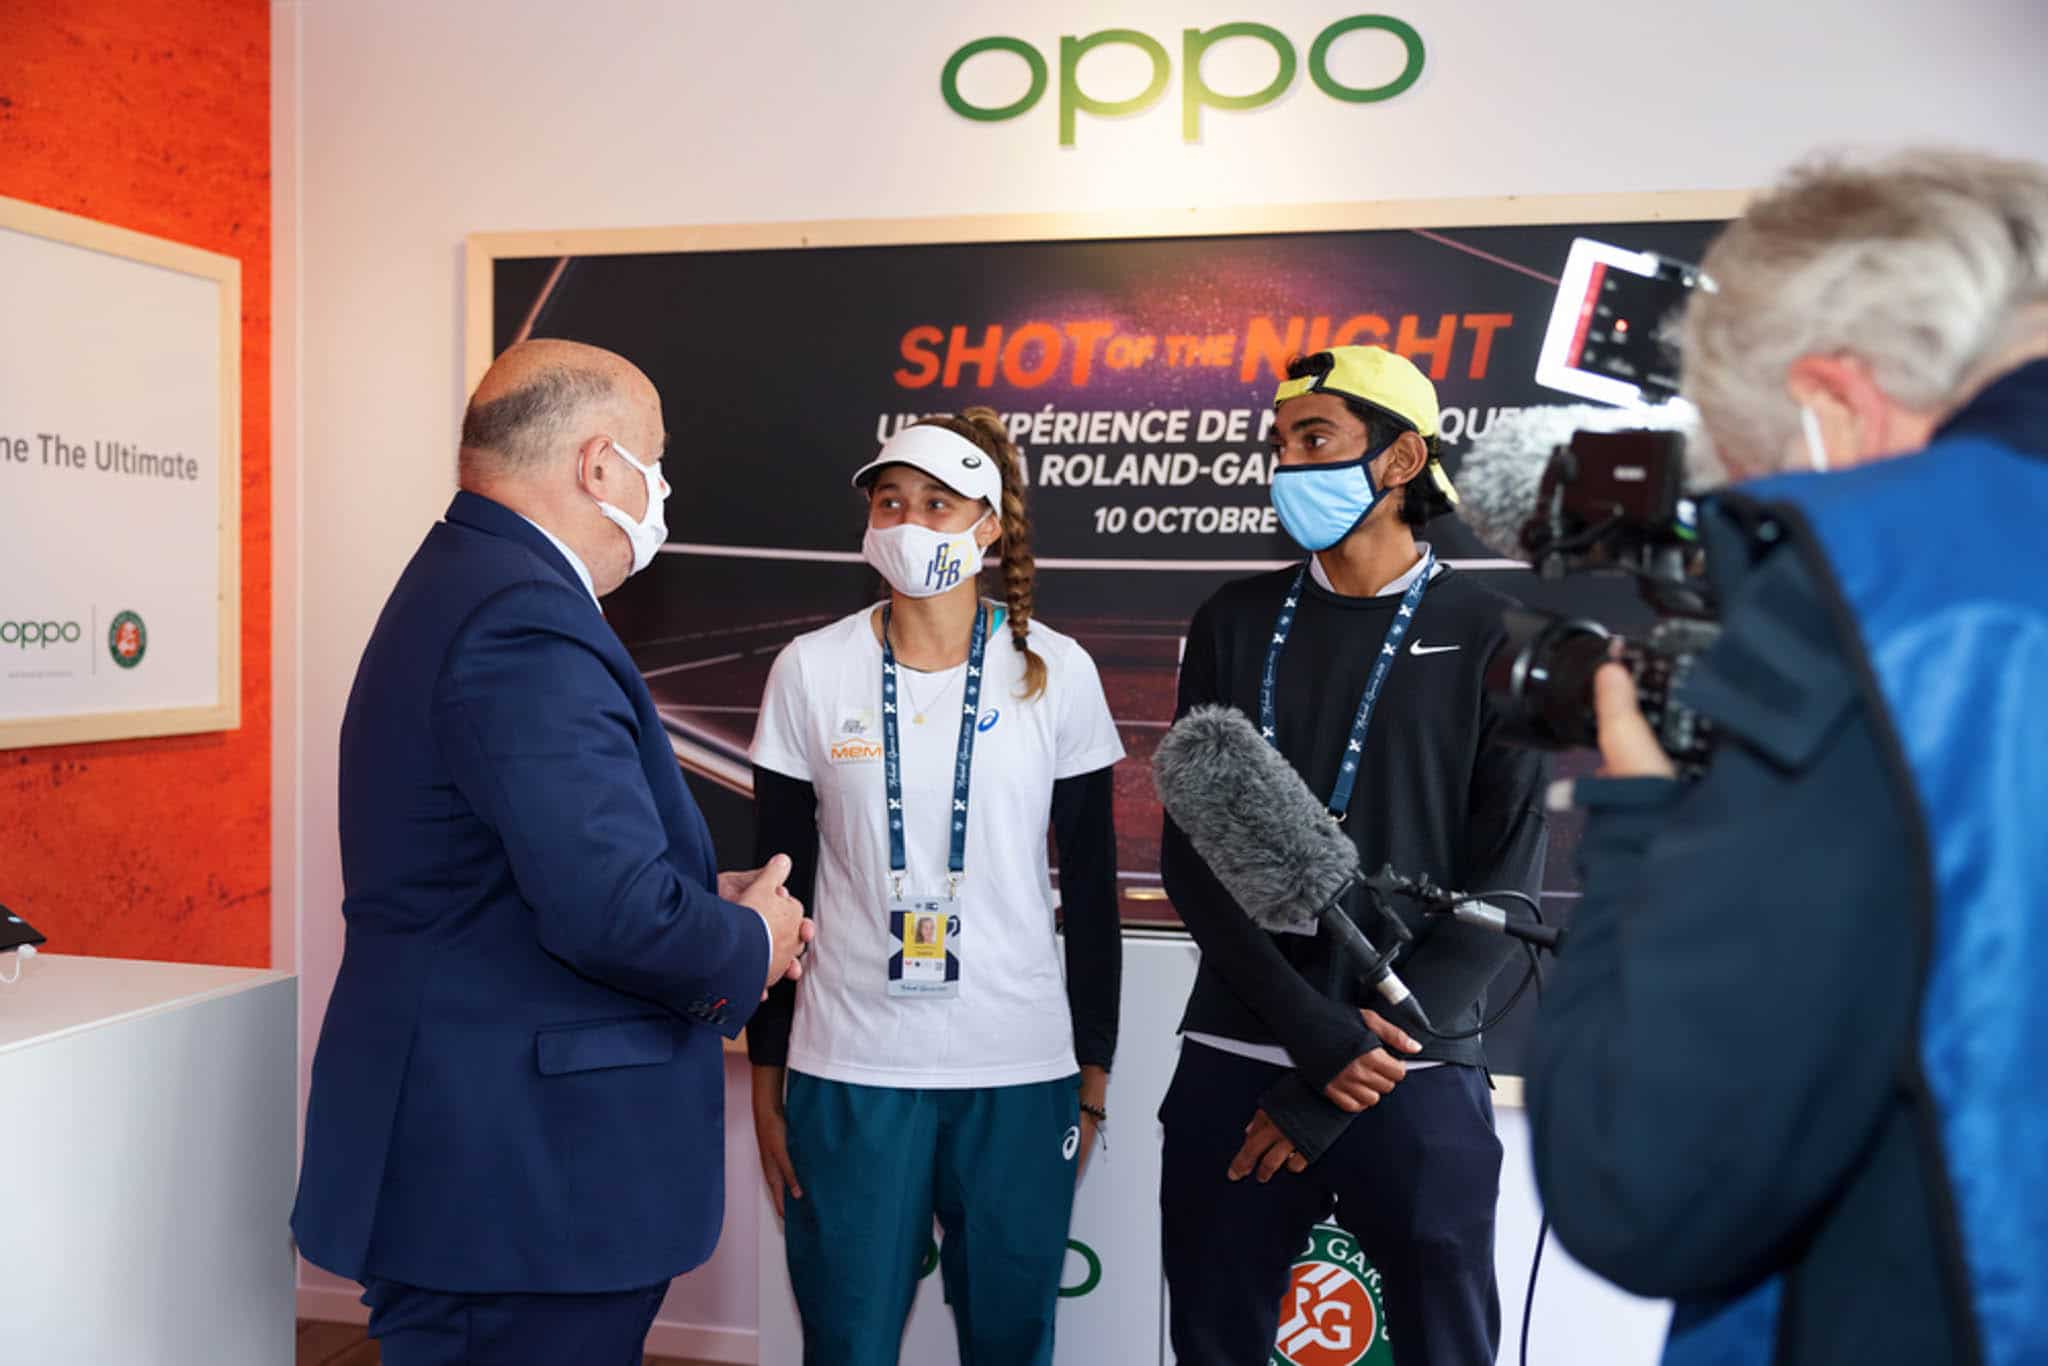 OPPO kỉ niệm năm thứ 2 là Đối tác Smartphone chính thức tại Roland-Garros